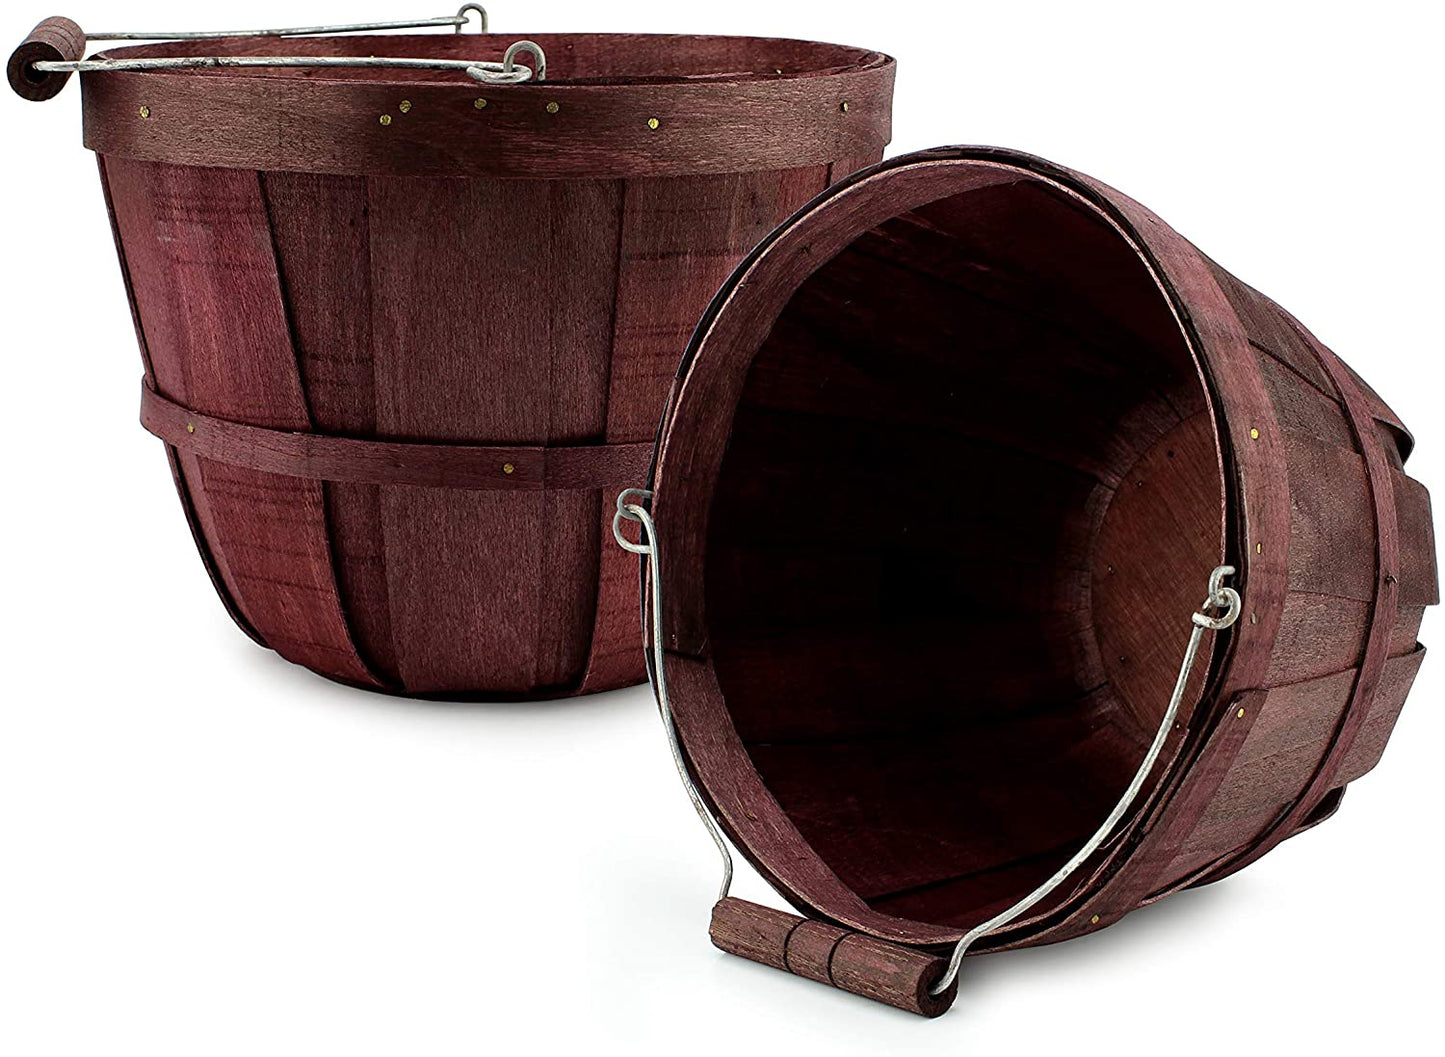 Round Wooden Baskets (2-Pack, Dark Brown)